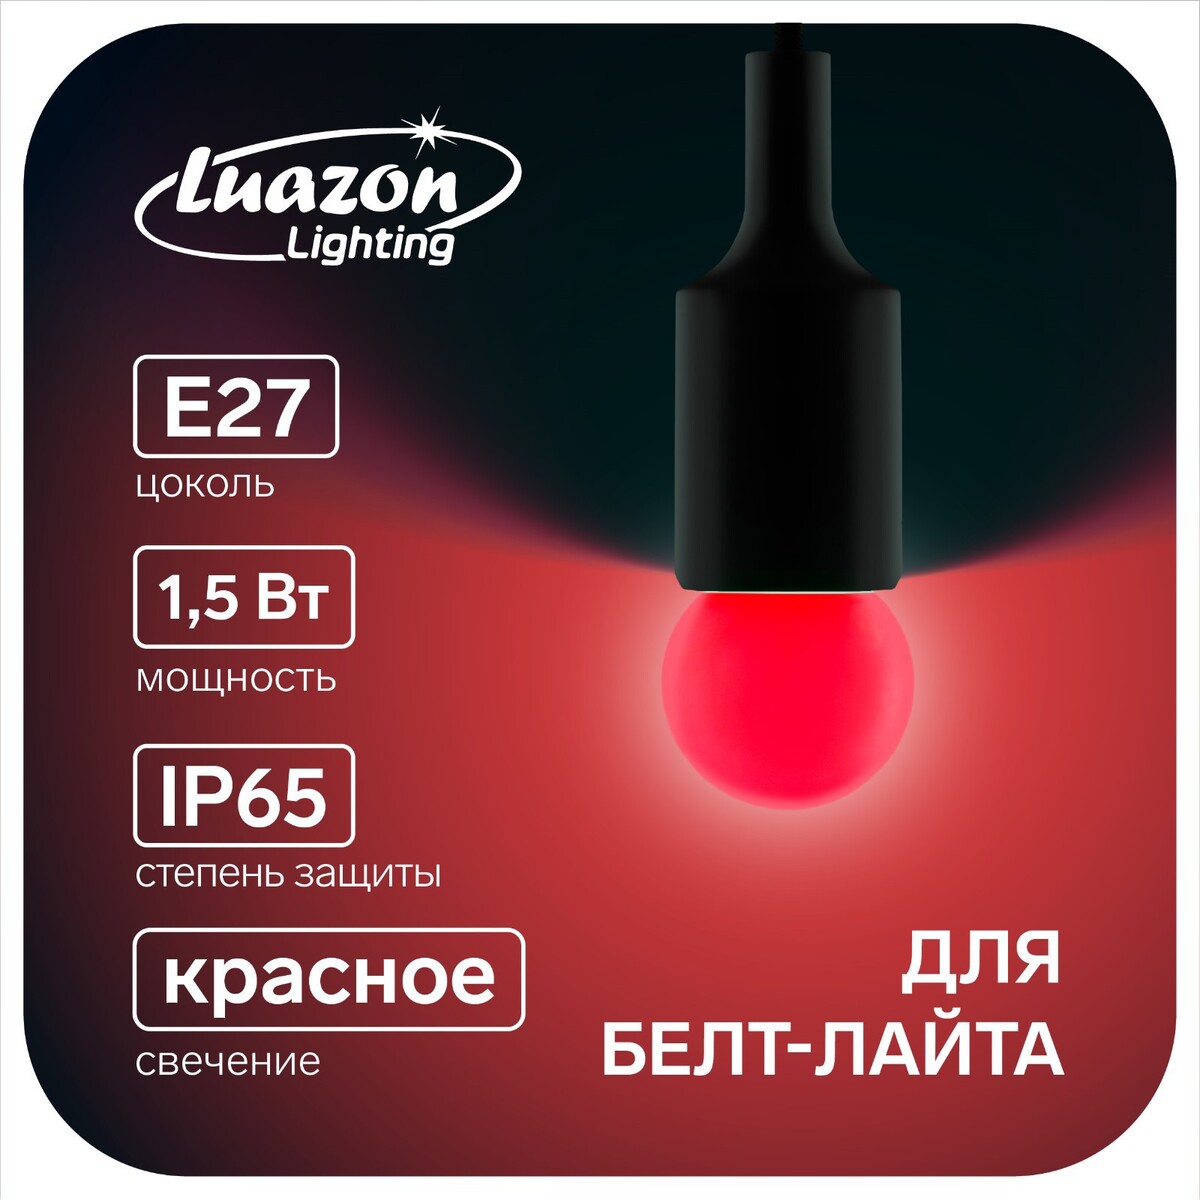 Лампа светодиодная luazon lighting, g45, е27, 1.5 вт, для белт-лайта, красная, наб 20 шт лампа cветодиодная luazon lighting g45 7 вт е14 630 лм 4000 к дневной свет